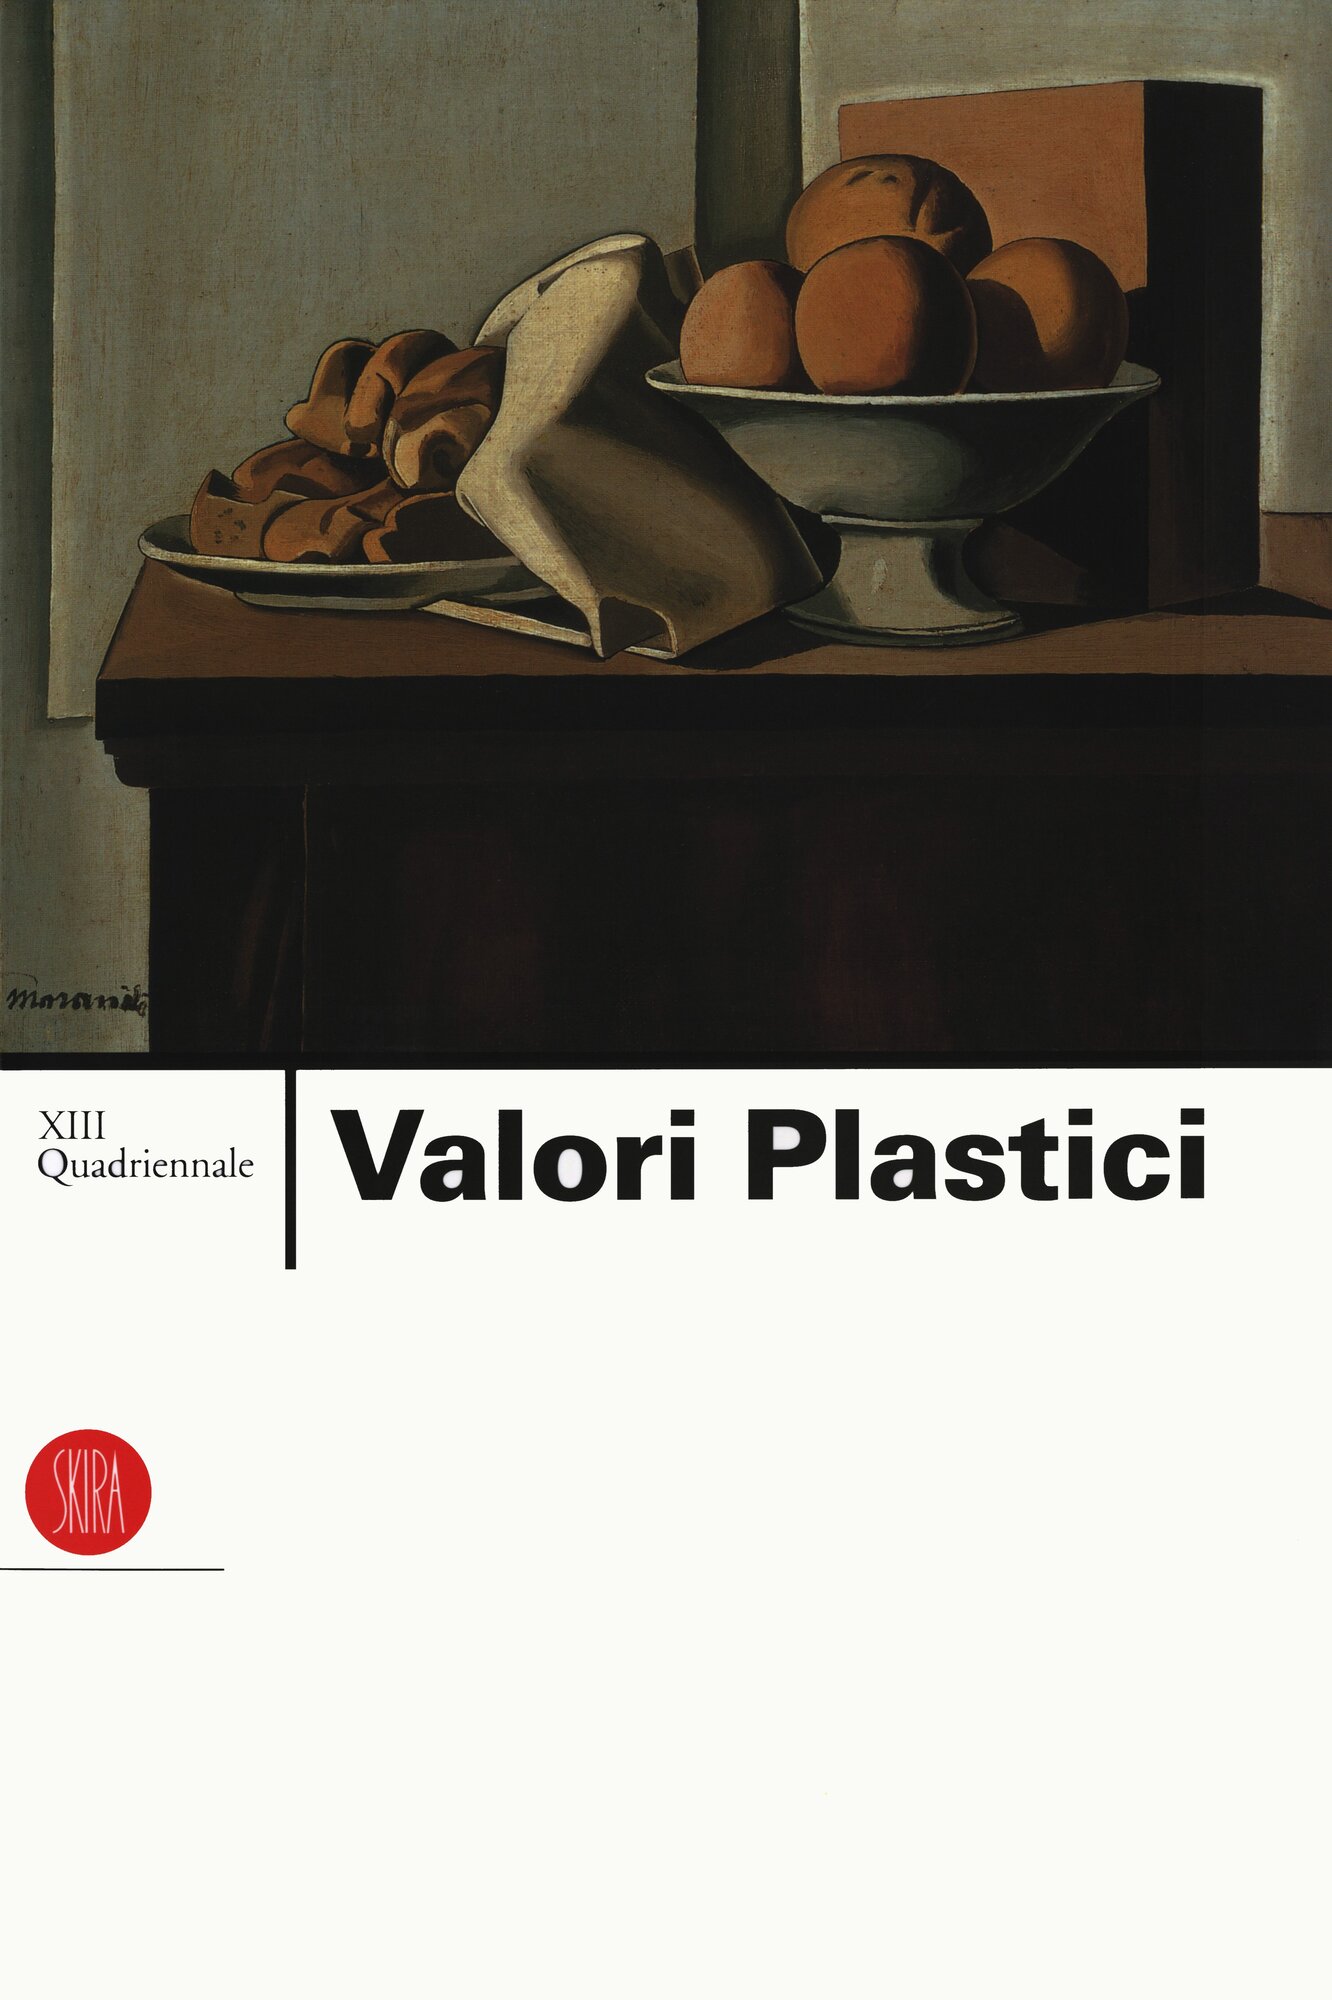 1998_XII Quadriennale Valori Plastici.jpg